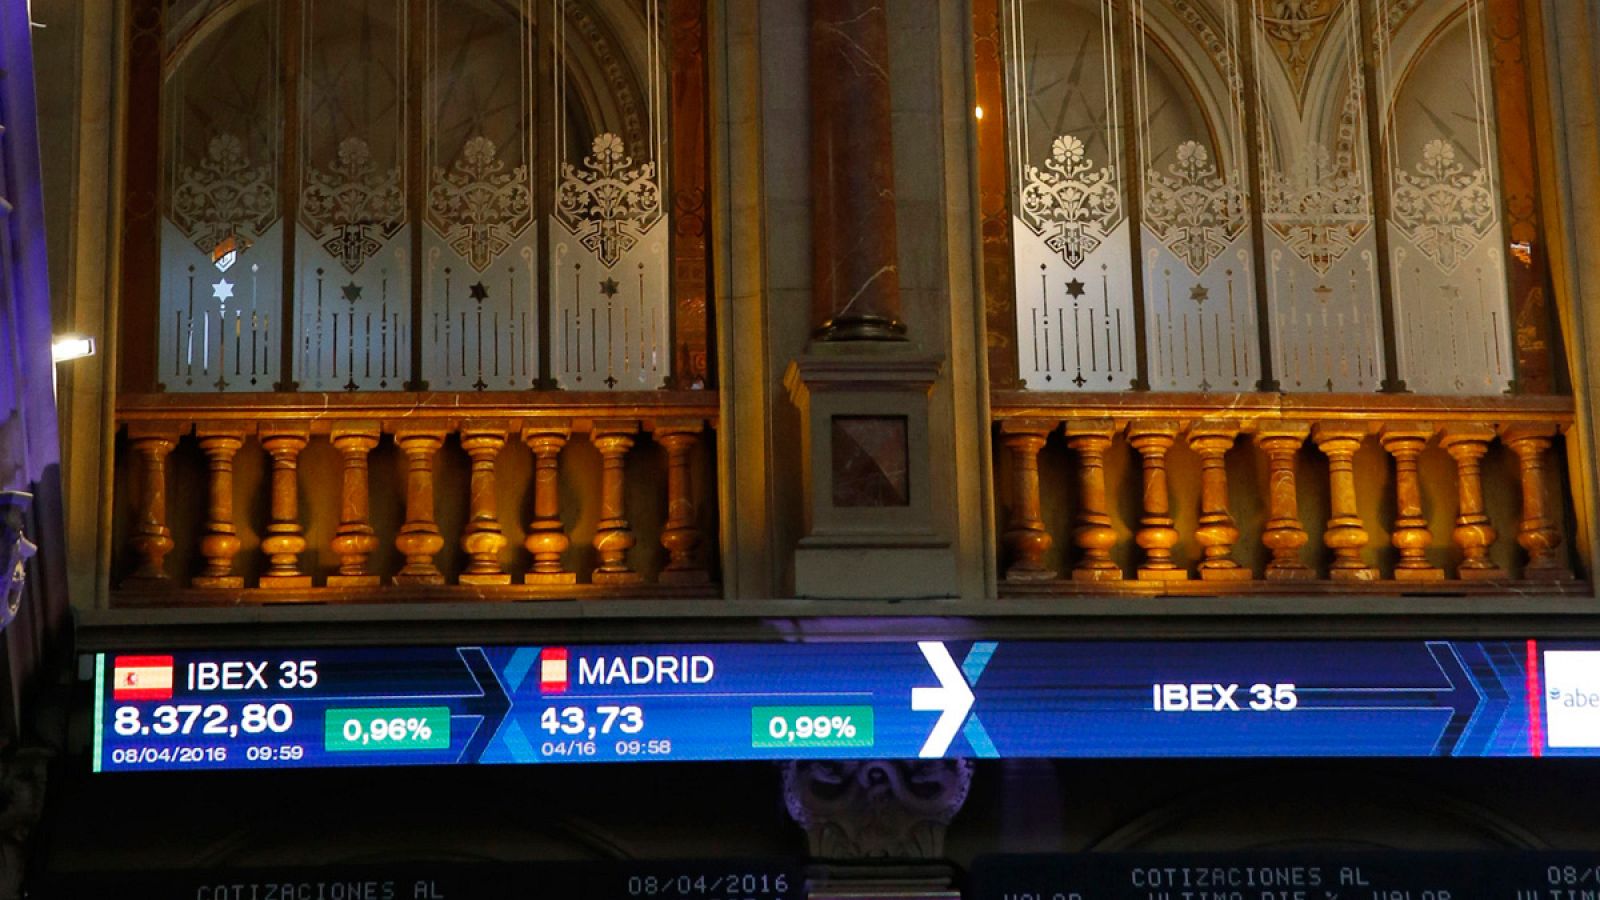 La Bolsa de Madrid